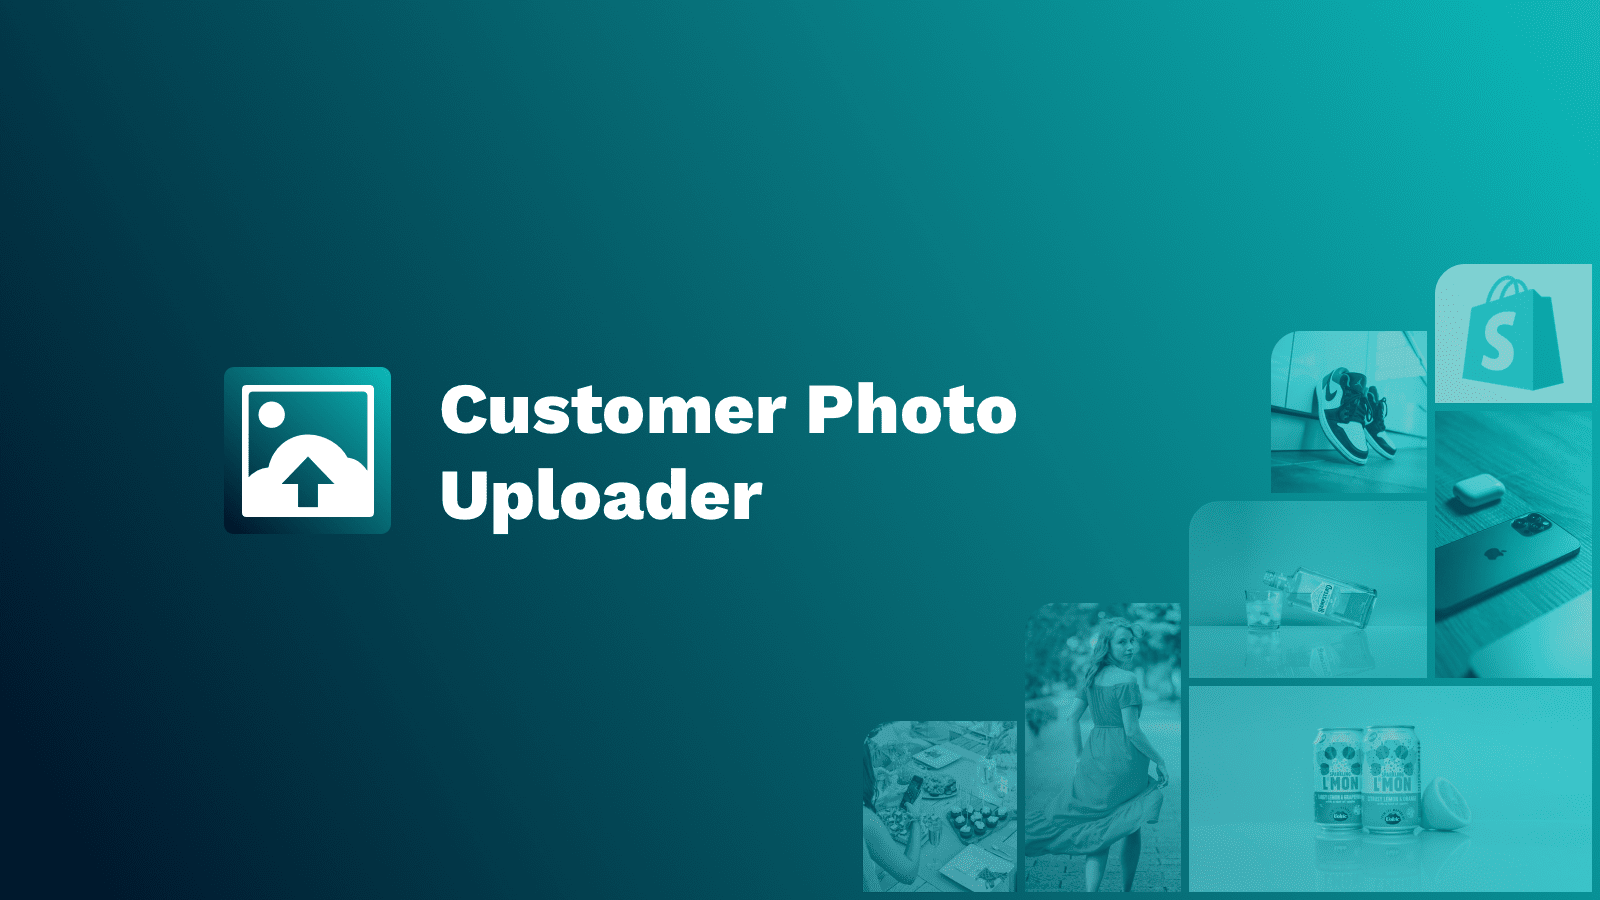 Kundenfoto-Uploader-App für von Kunden erstellte Bilder